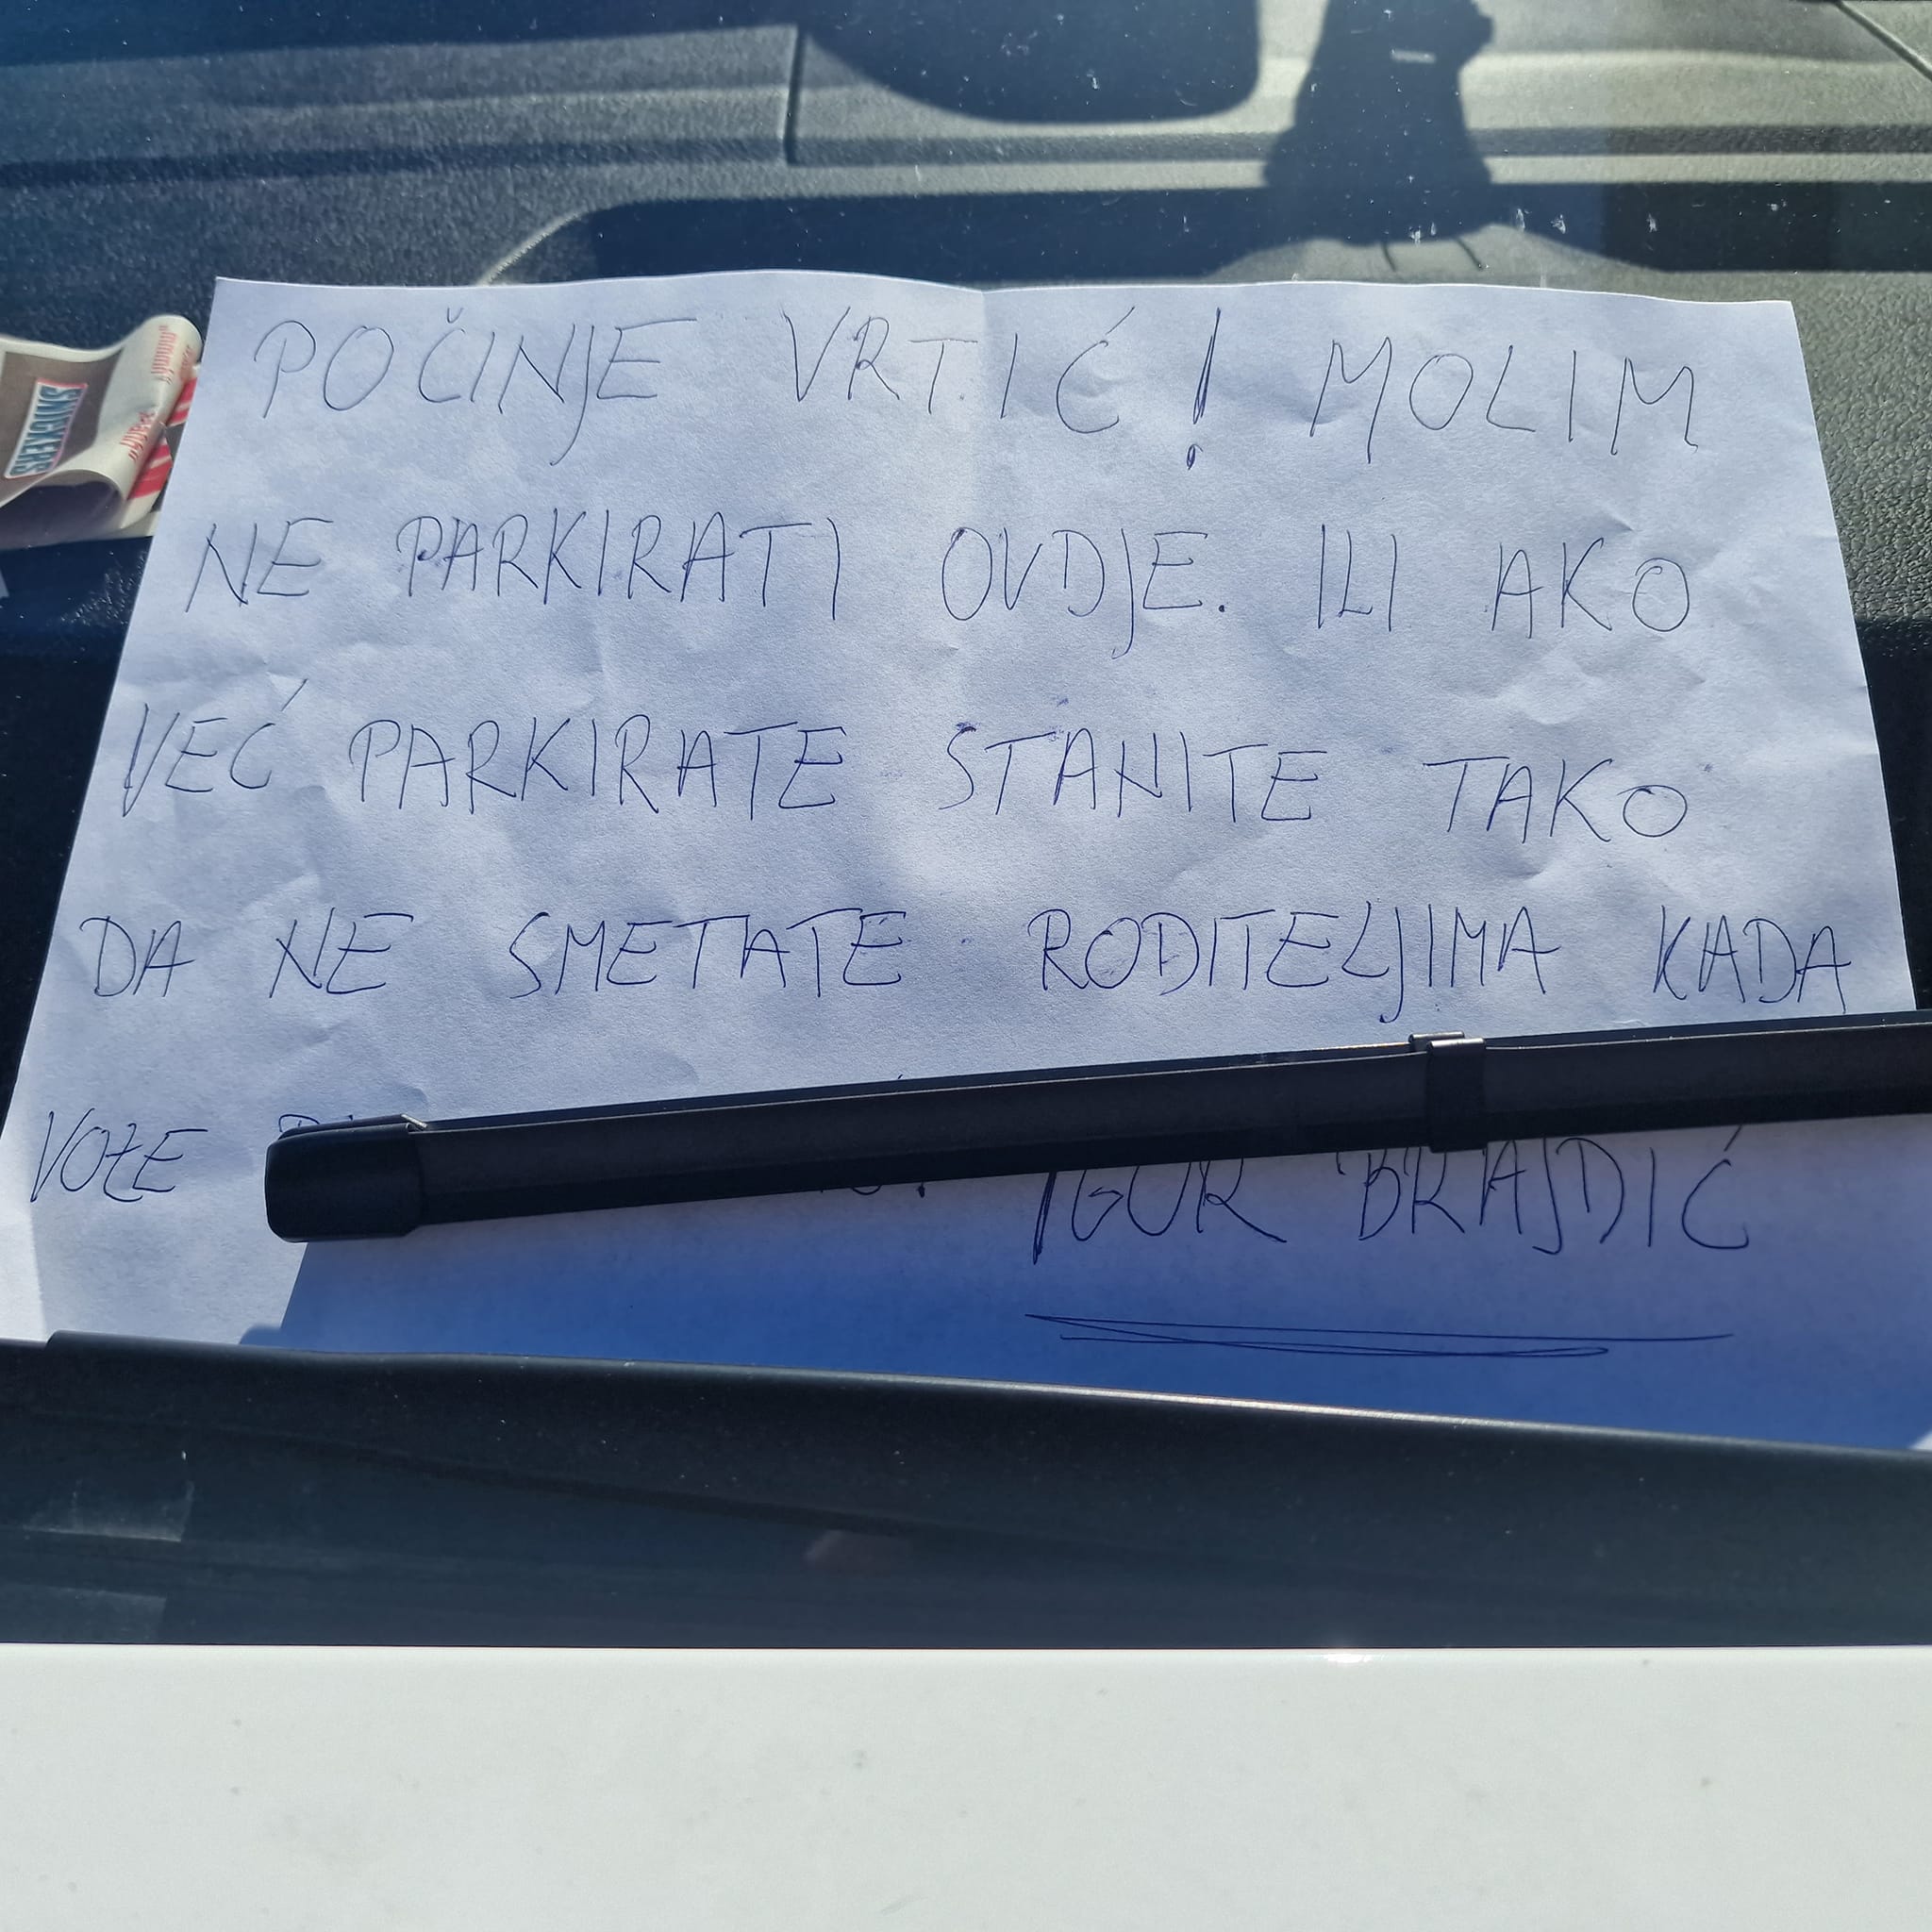 Dogradonačelnik Brajdić ostavio potpisanu poruku nesavjesnom vozaču: Ne parkirajte ovdje!